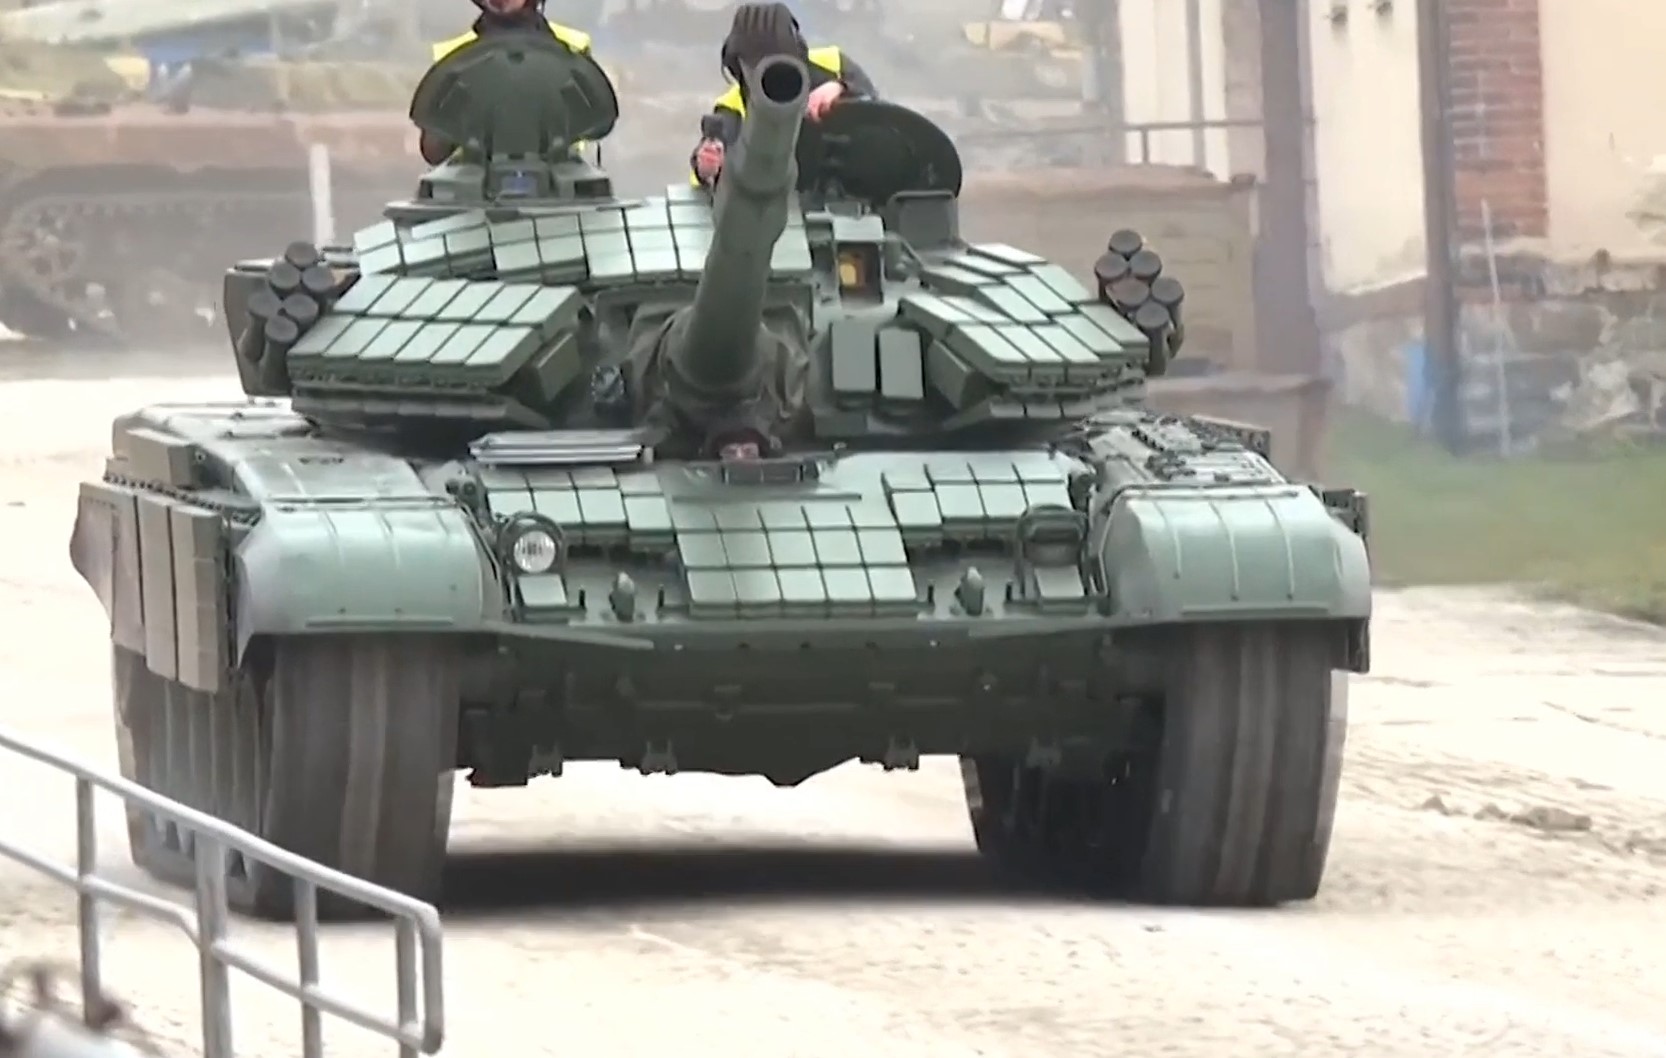 Модернізований танк Т-72 для України на заводі Excalibur Army. Чехія. Грудень 2022. Кадр з відео "Настоящее время"